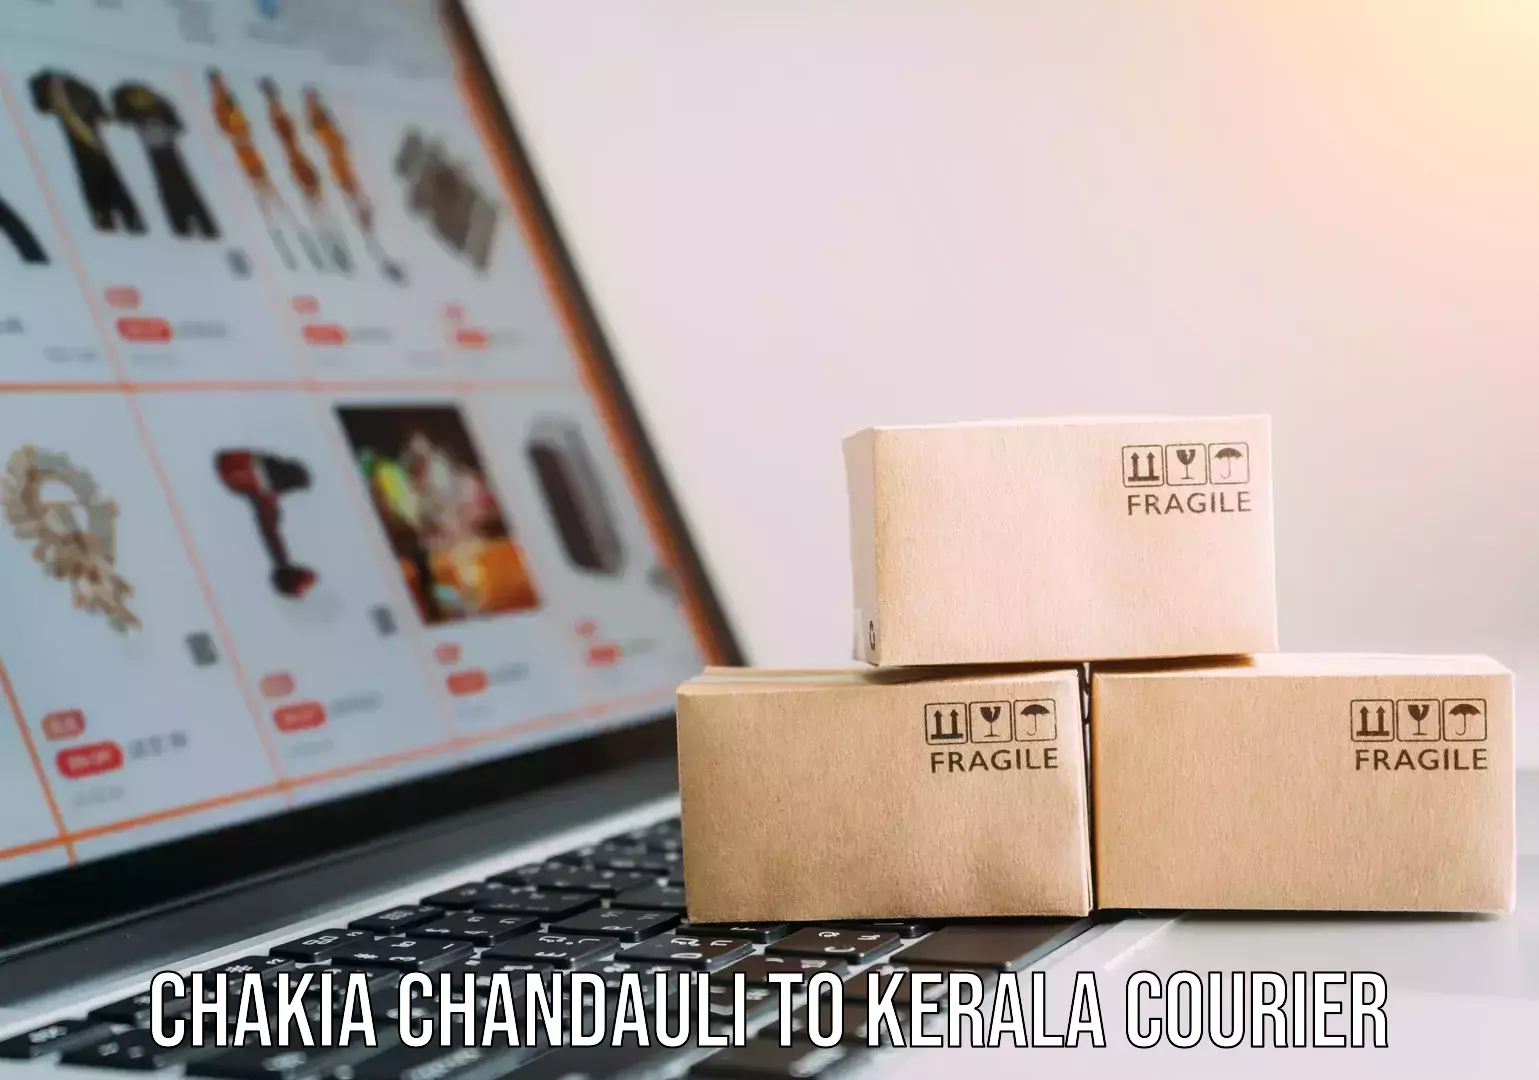 Nationwide shipping capabilities Chakia Chandauli to Kerala